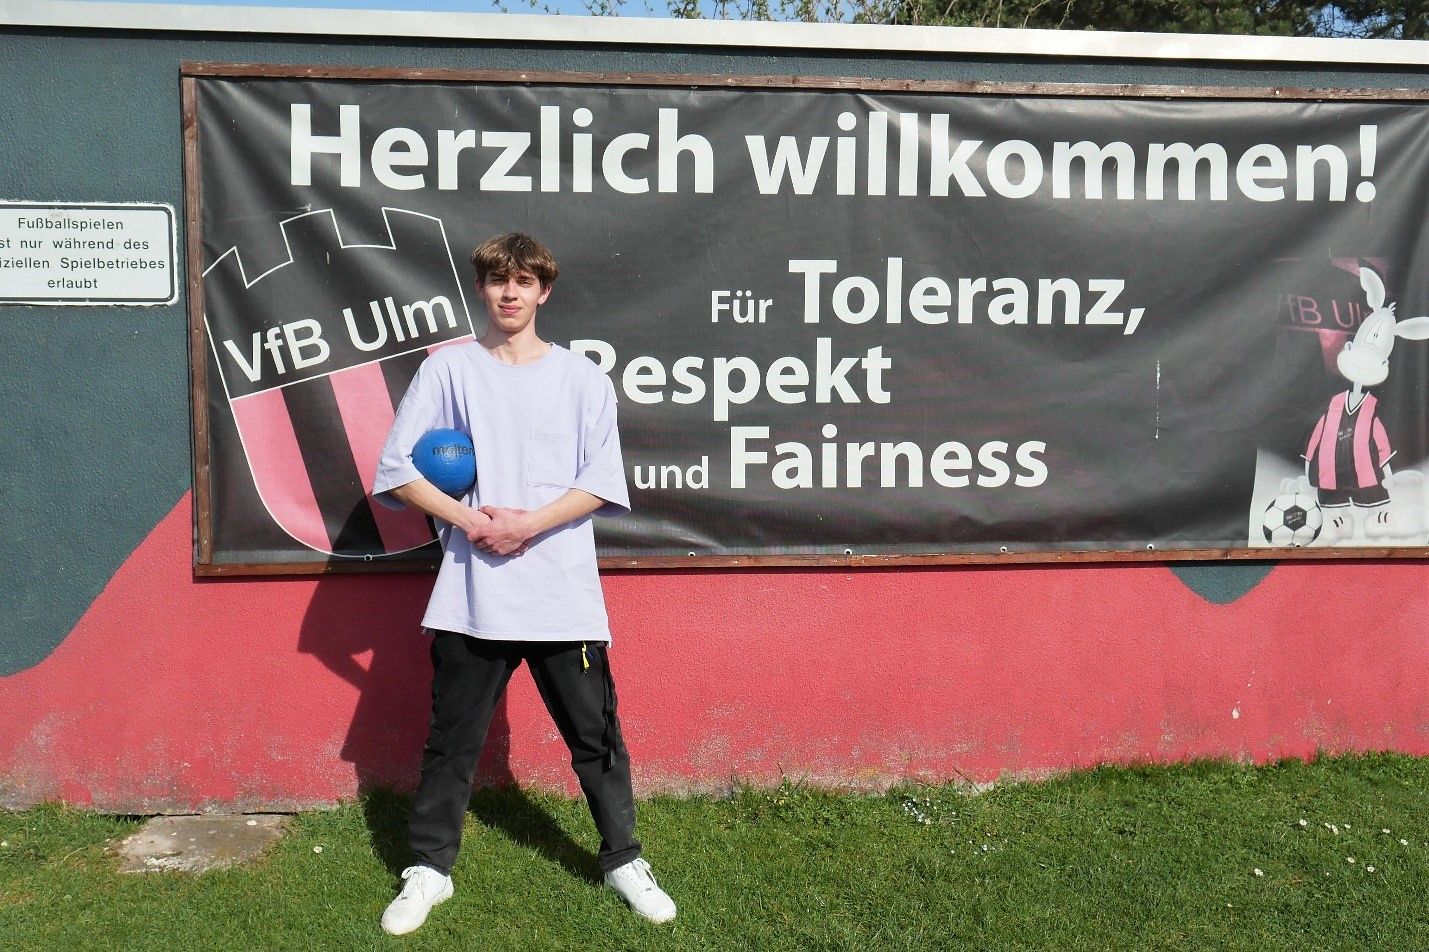 Ein jumger Mann steht vor einem Banner des VfB Ulm